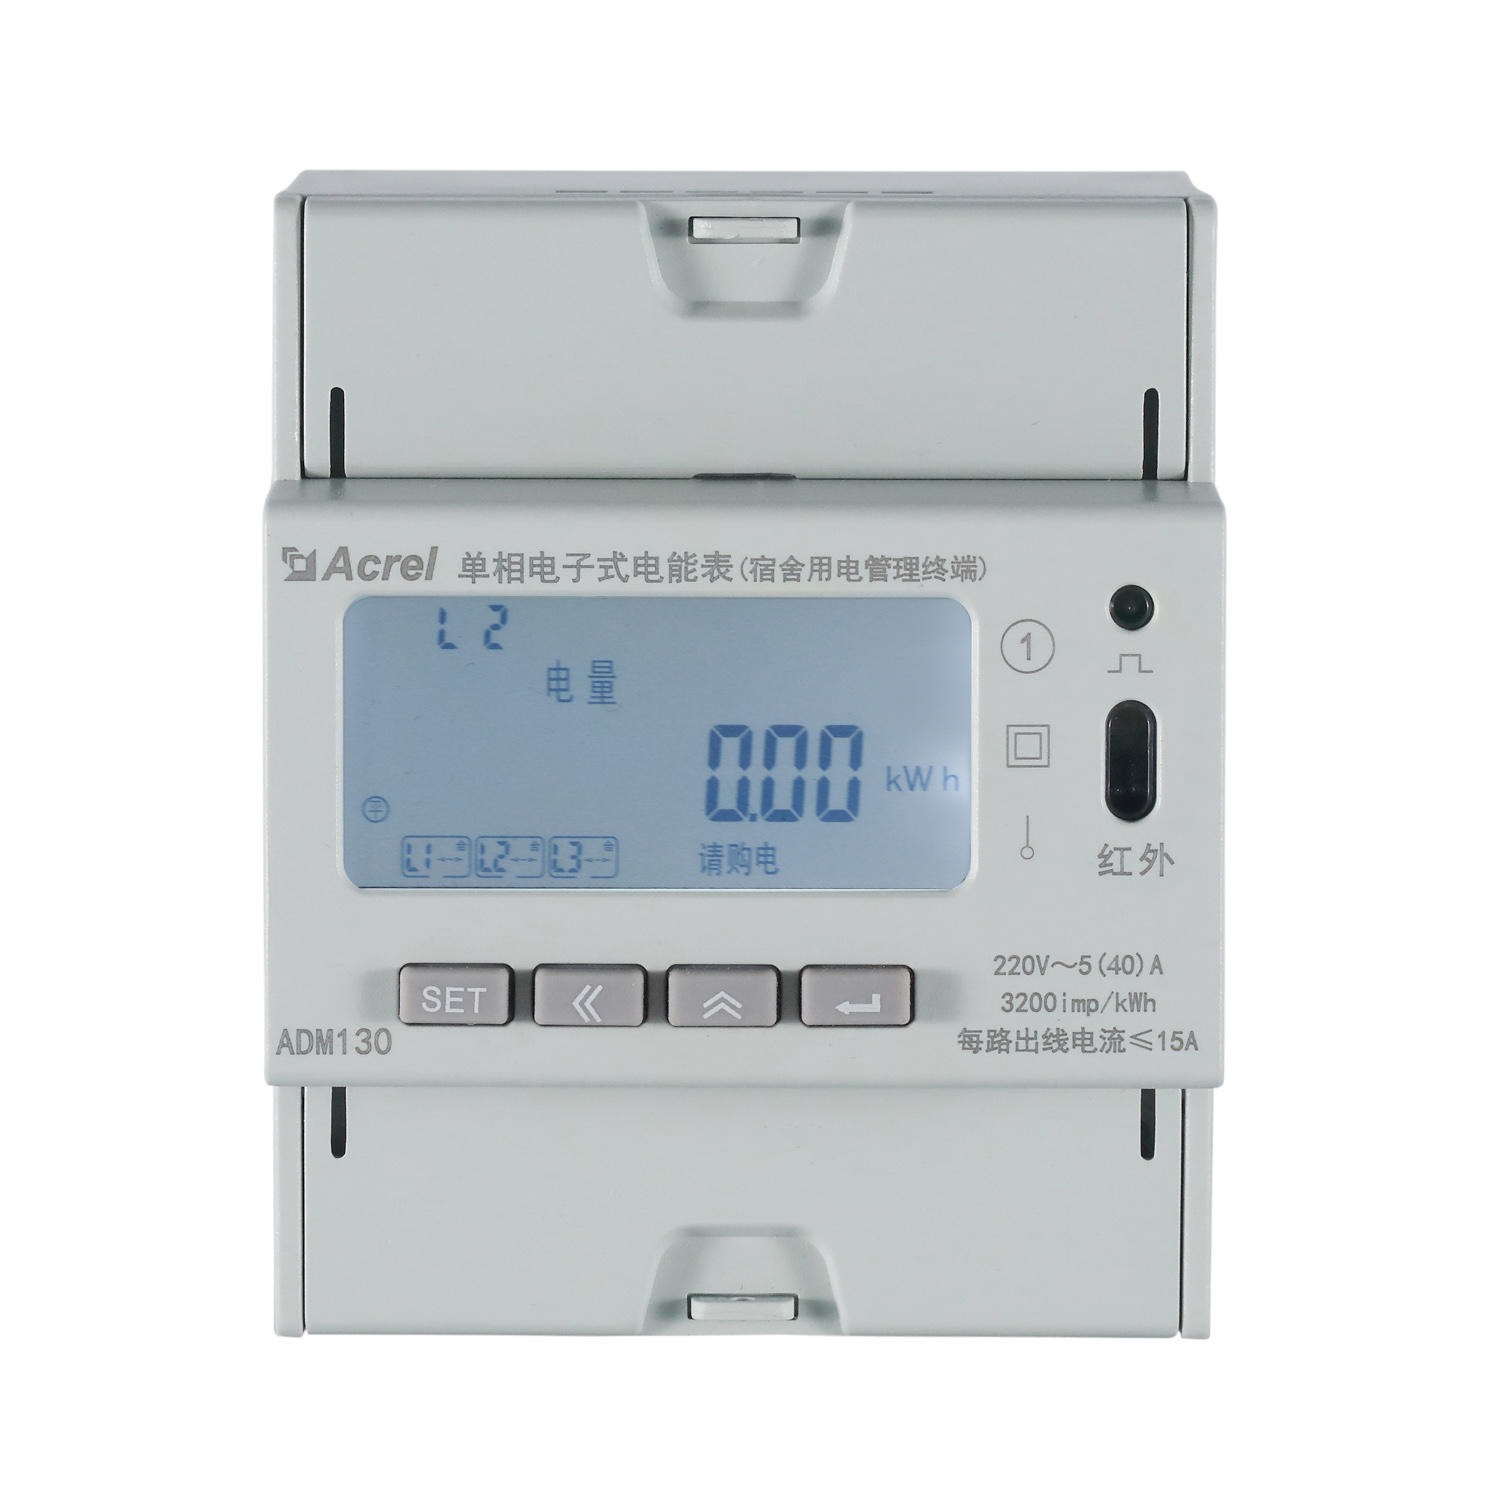 预付费控制 负载控制 时间控制 ADM130 宿舍公寓用电终端仪表